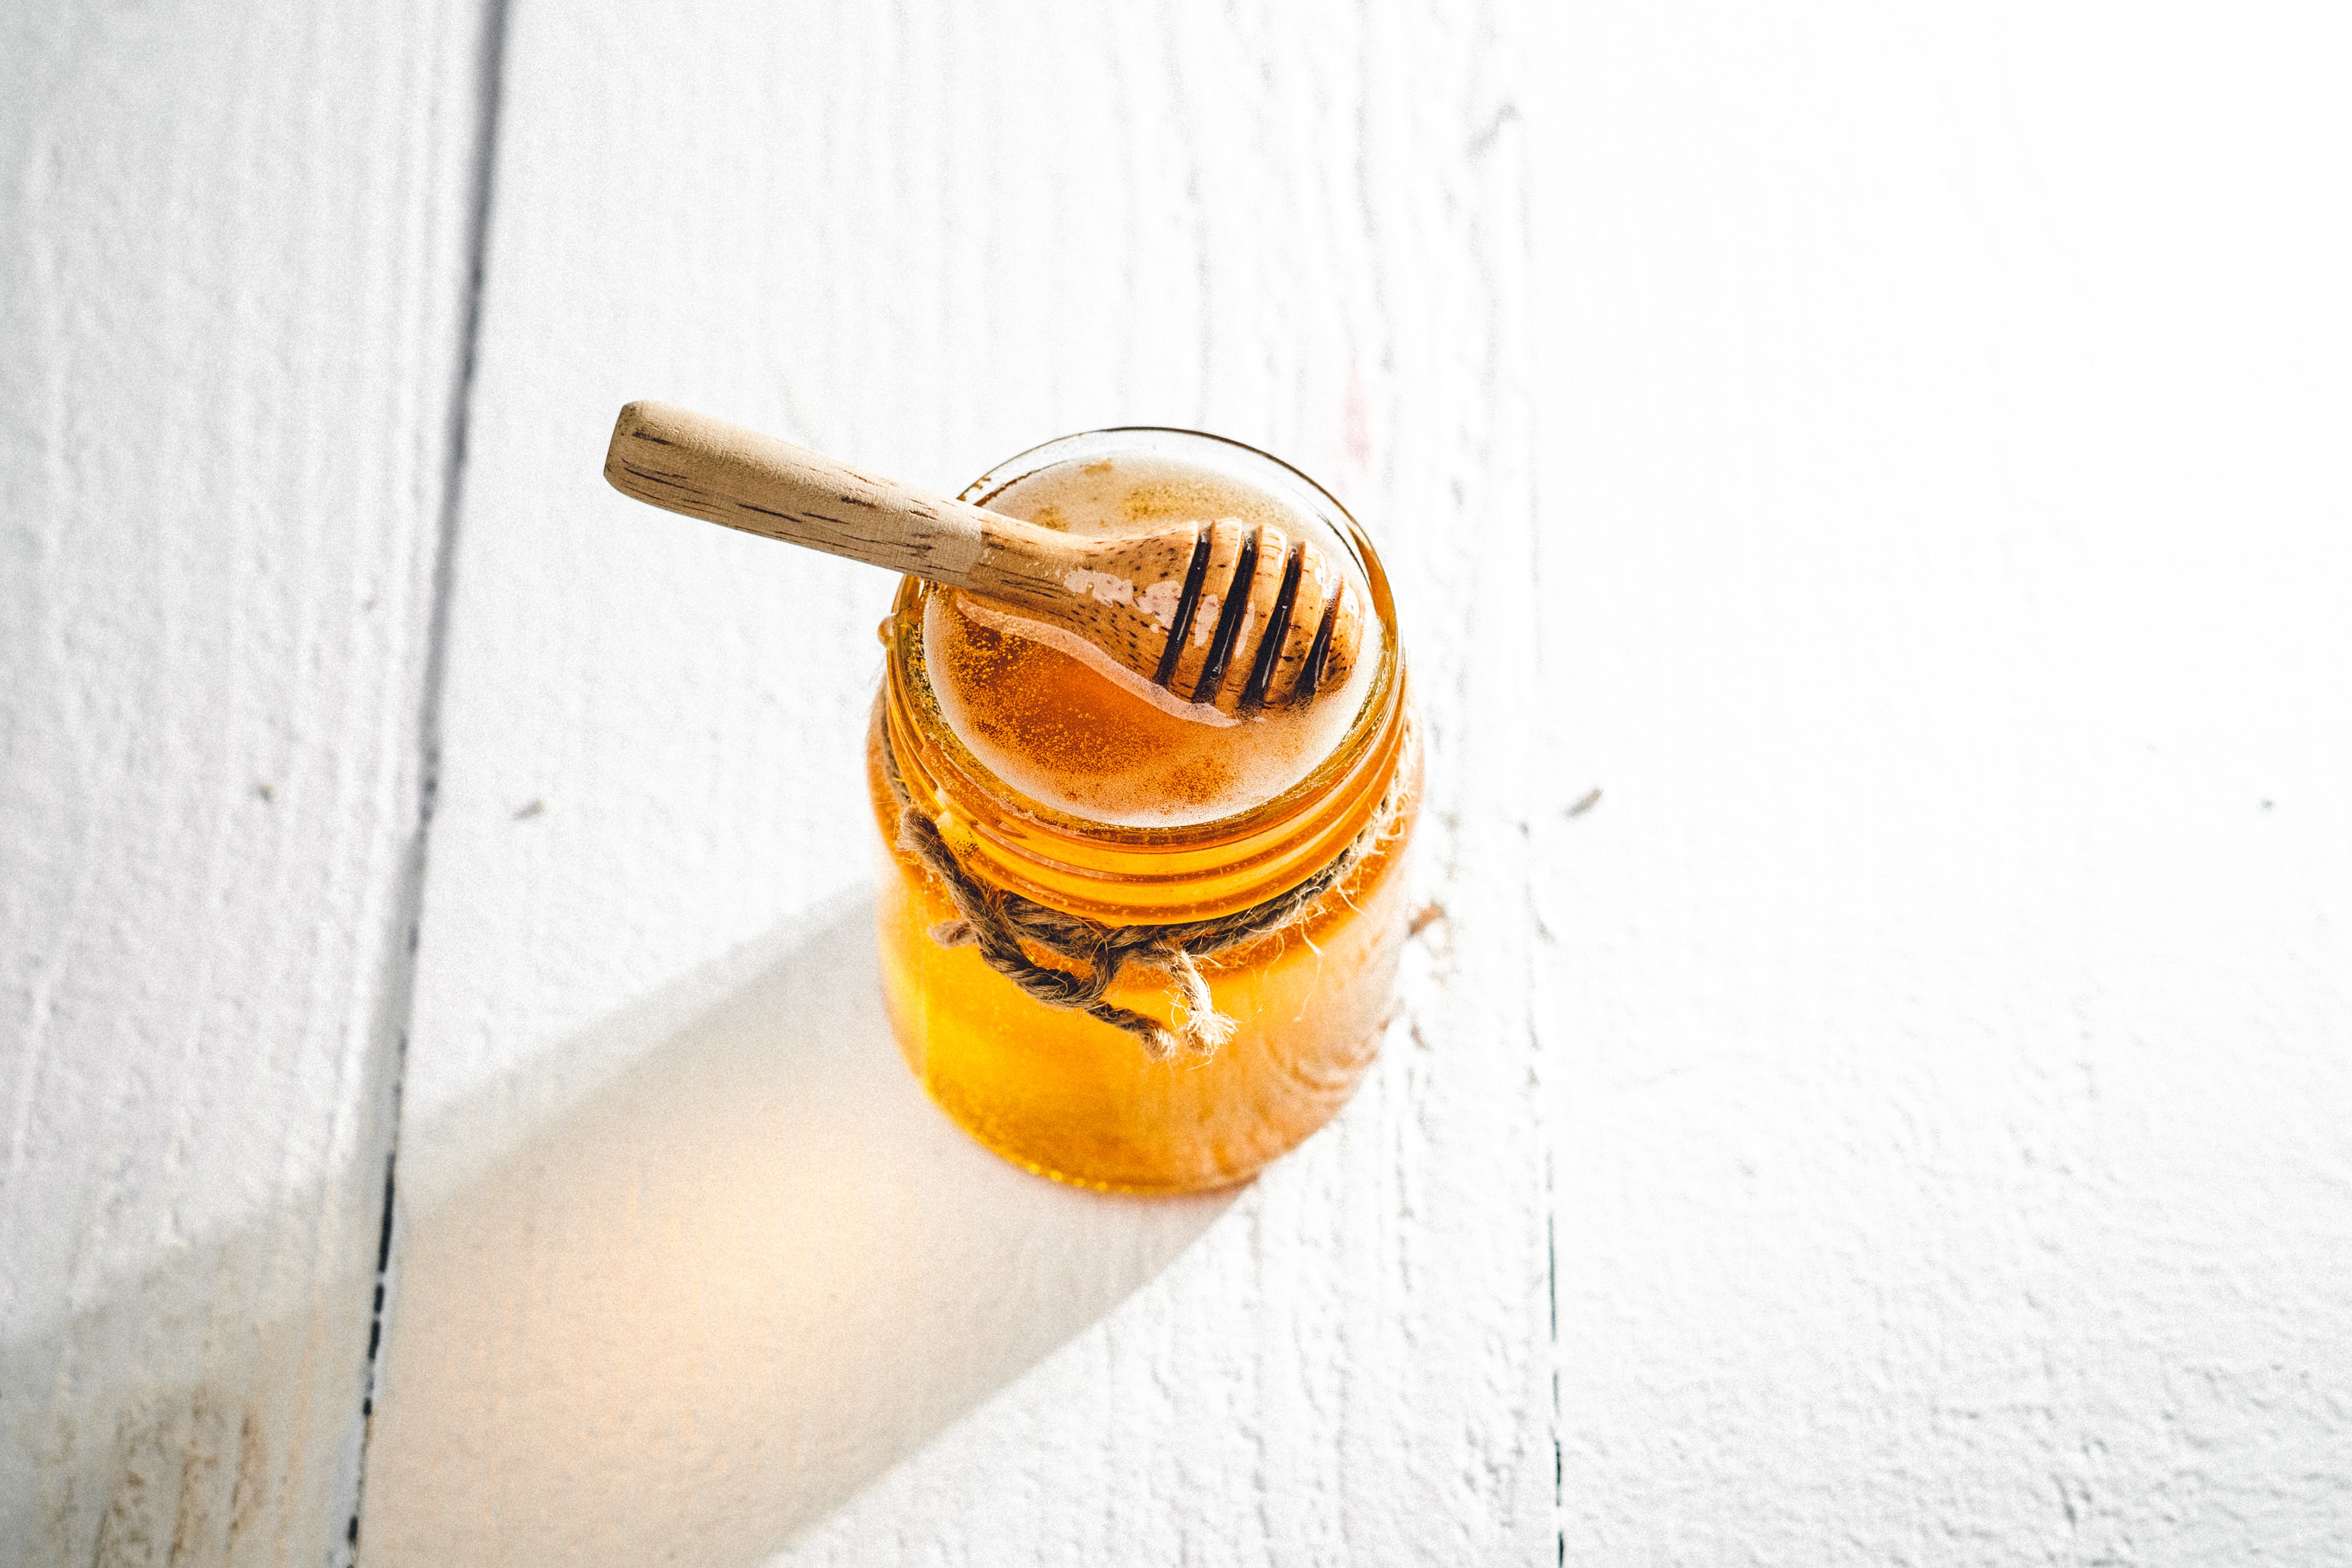 Mrekullitë që bën përdorimi i mjaltit në lëkurën tuaj janë thjeshtë befasuese